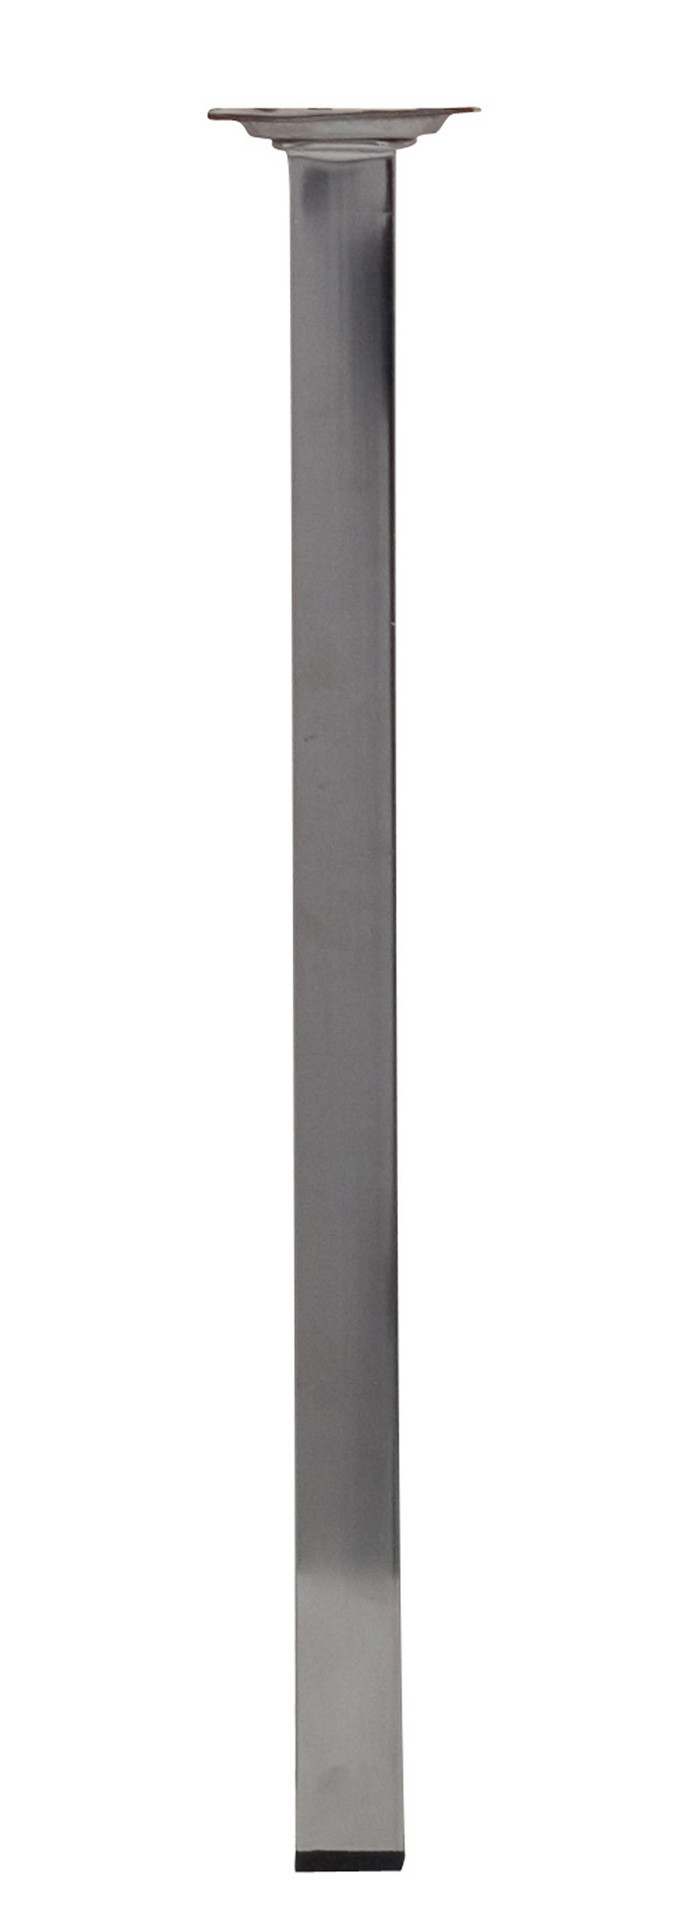 Pied table basse carré HETTICH fixe acier chromé gris